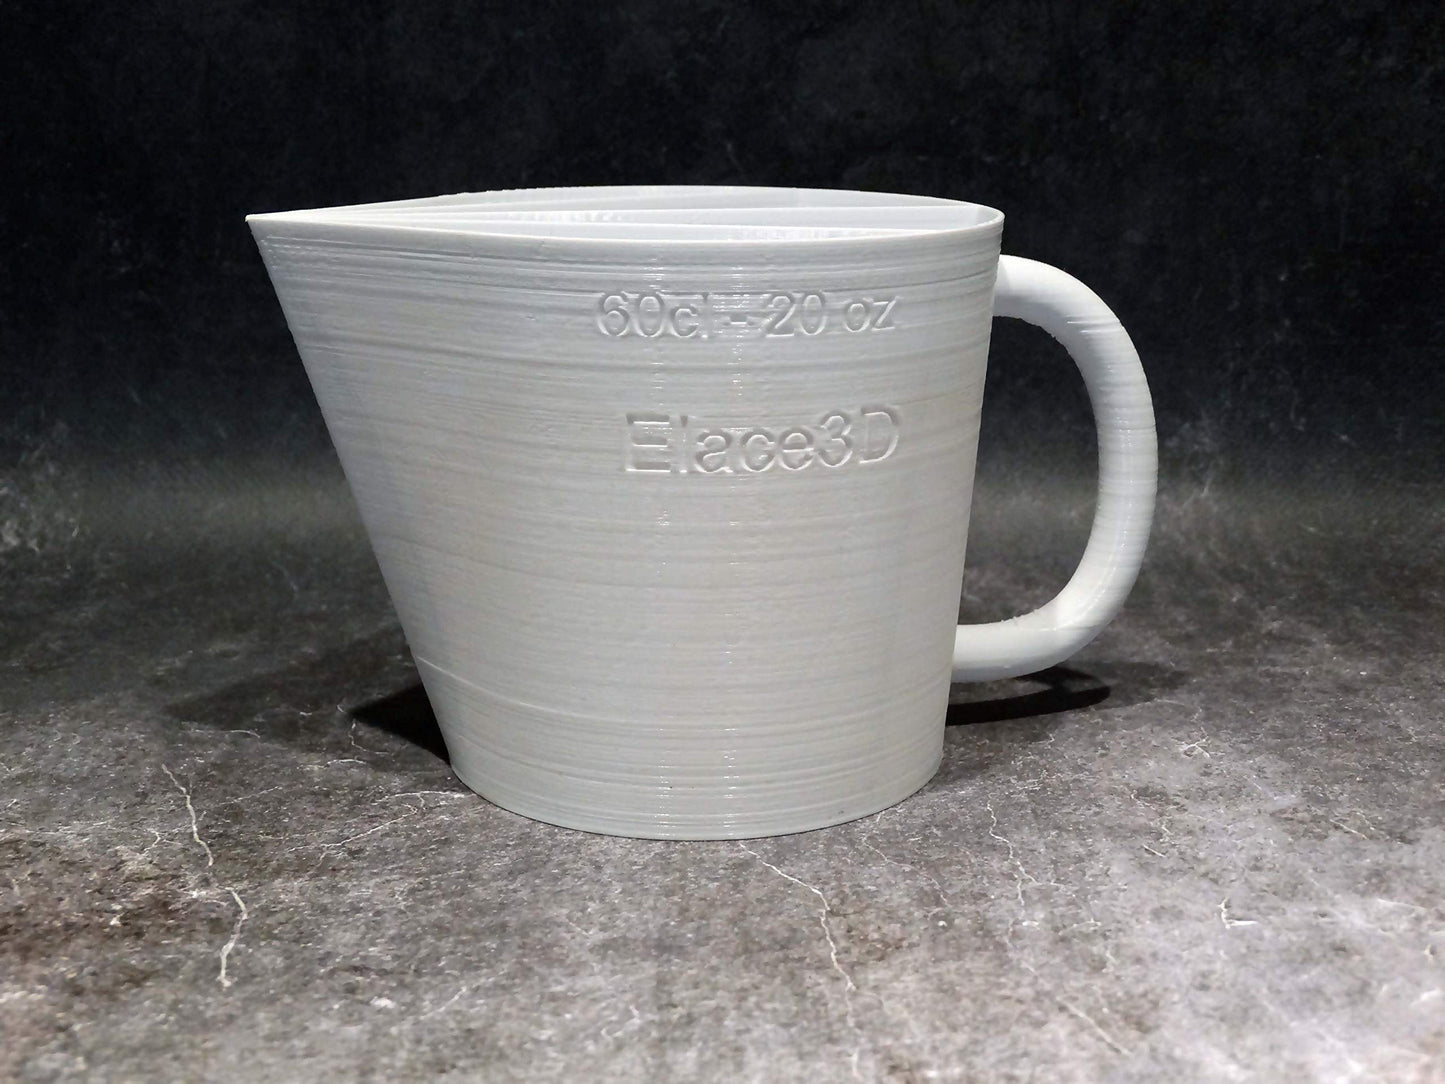 ELACE3D Tasse Cup de 60cl 20oz - 2 canaux - Version 2021 - pour Peinture Acrylique Liquide Fluide, Technique Acrylique Pouring ou coulée - Made in France DIY